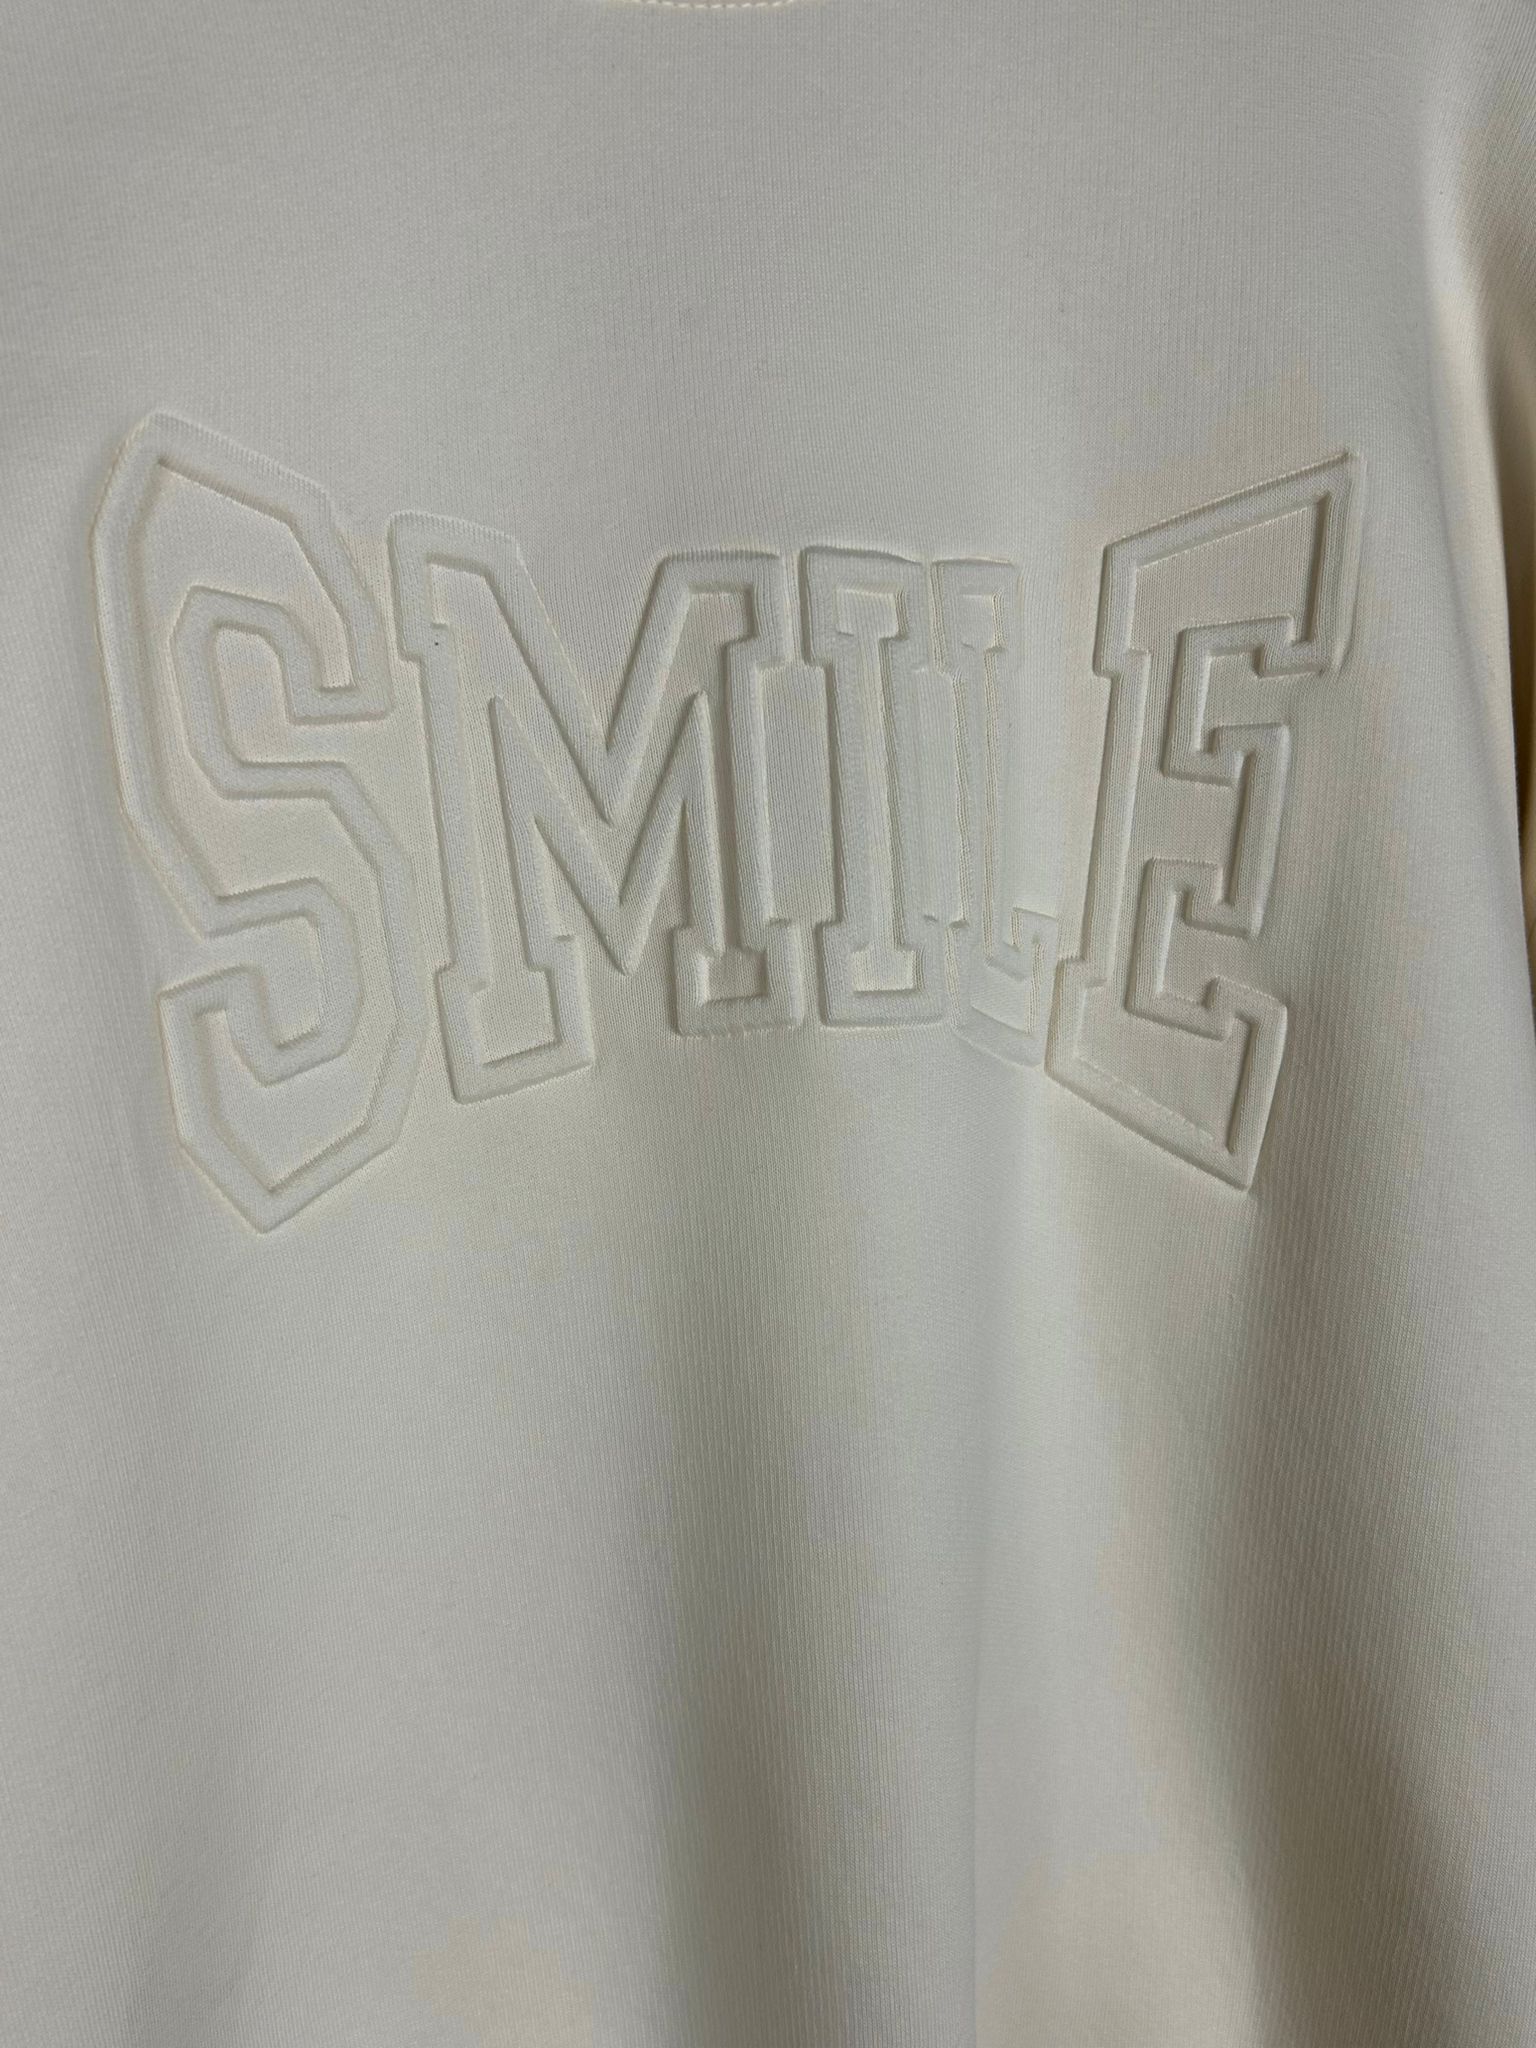 Sweater mit “SMILE” 3D Schrift